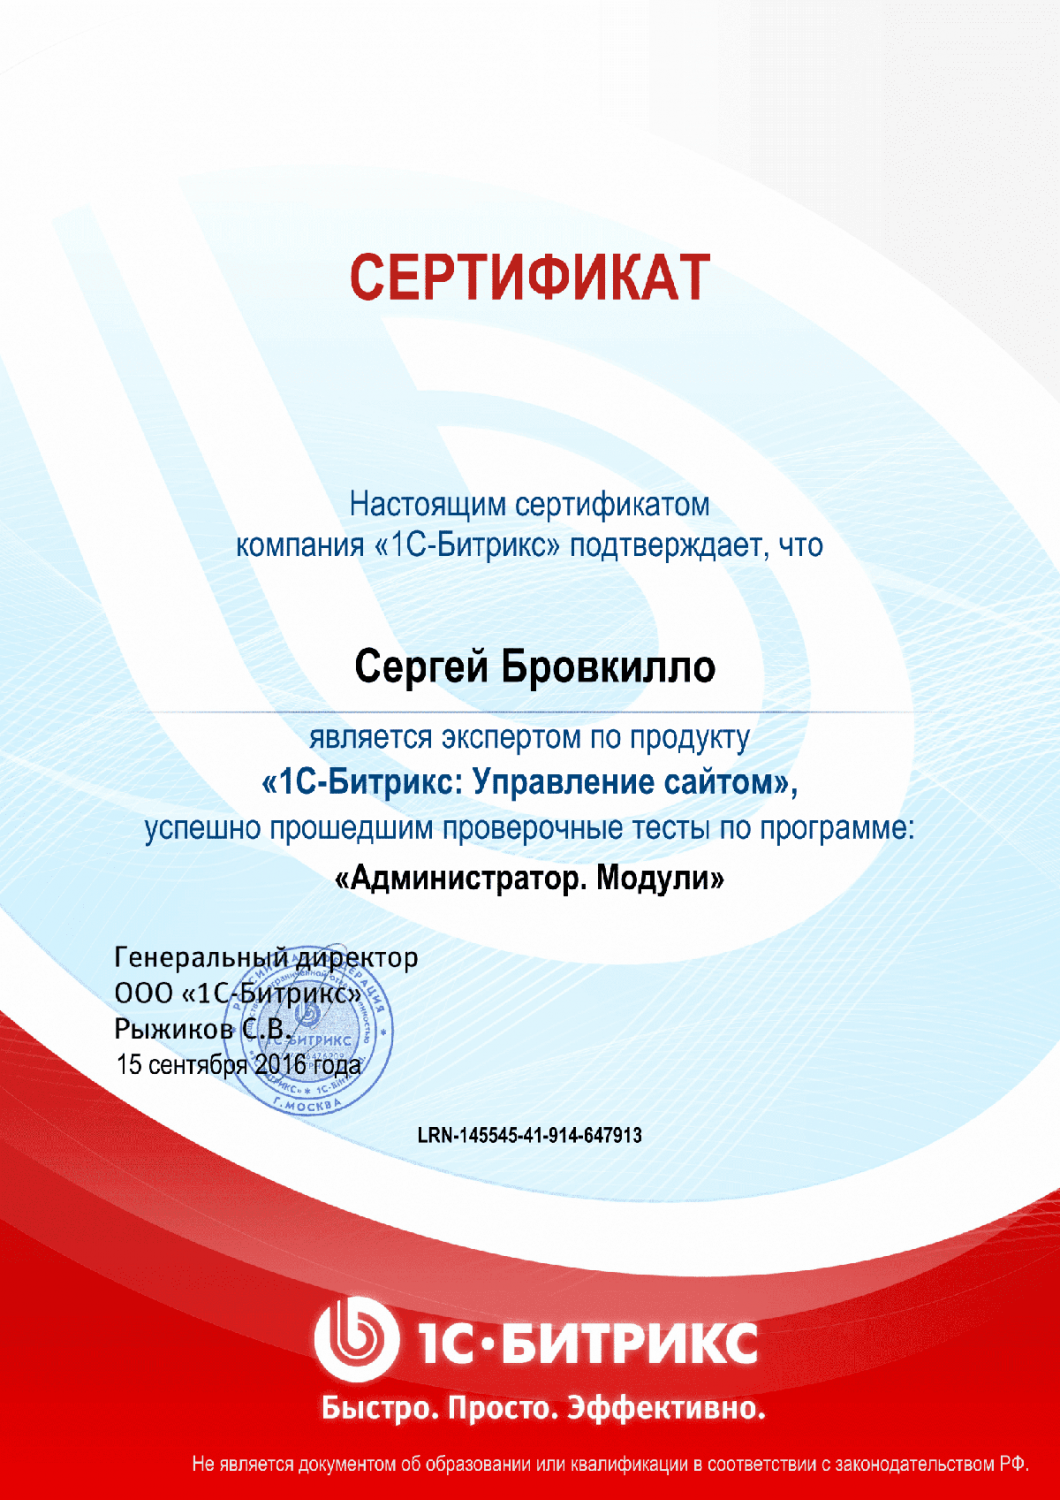 Сертификат эксперта по программе "Администратор. Модули" в Липецка